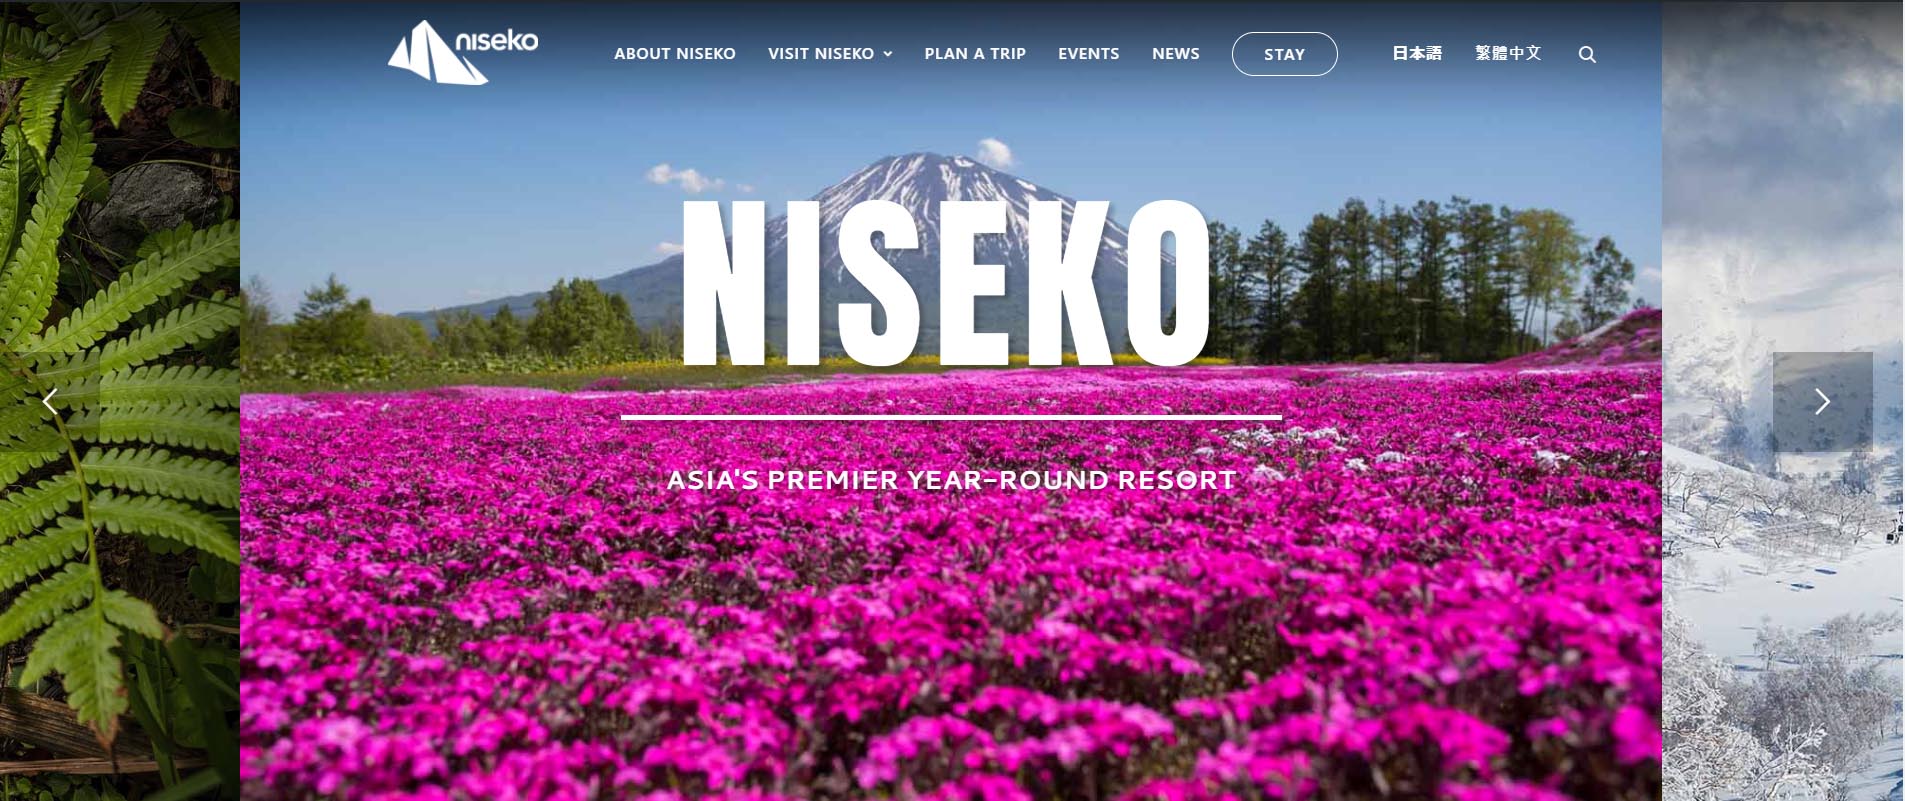 Niseko Tourism Website